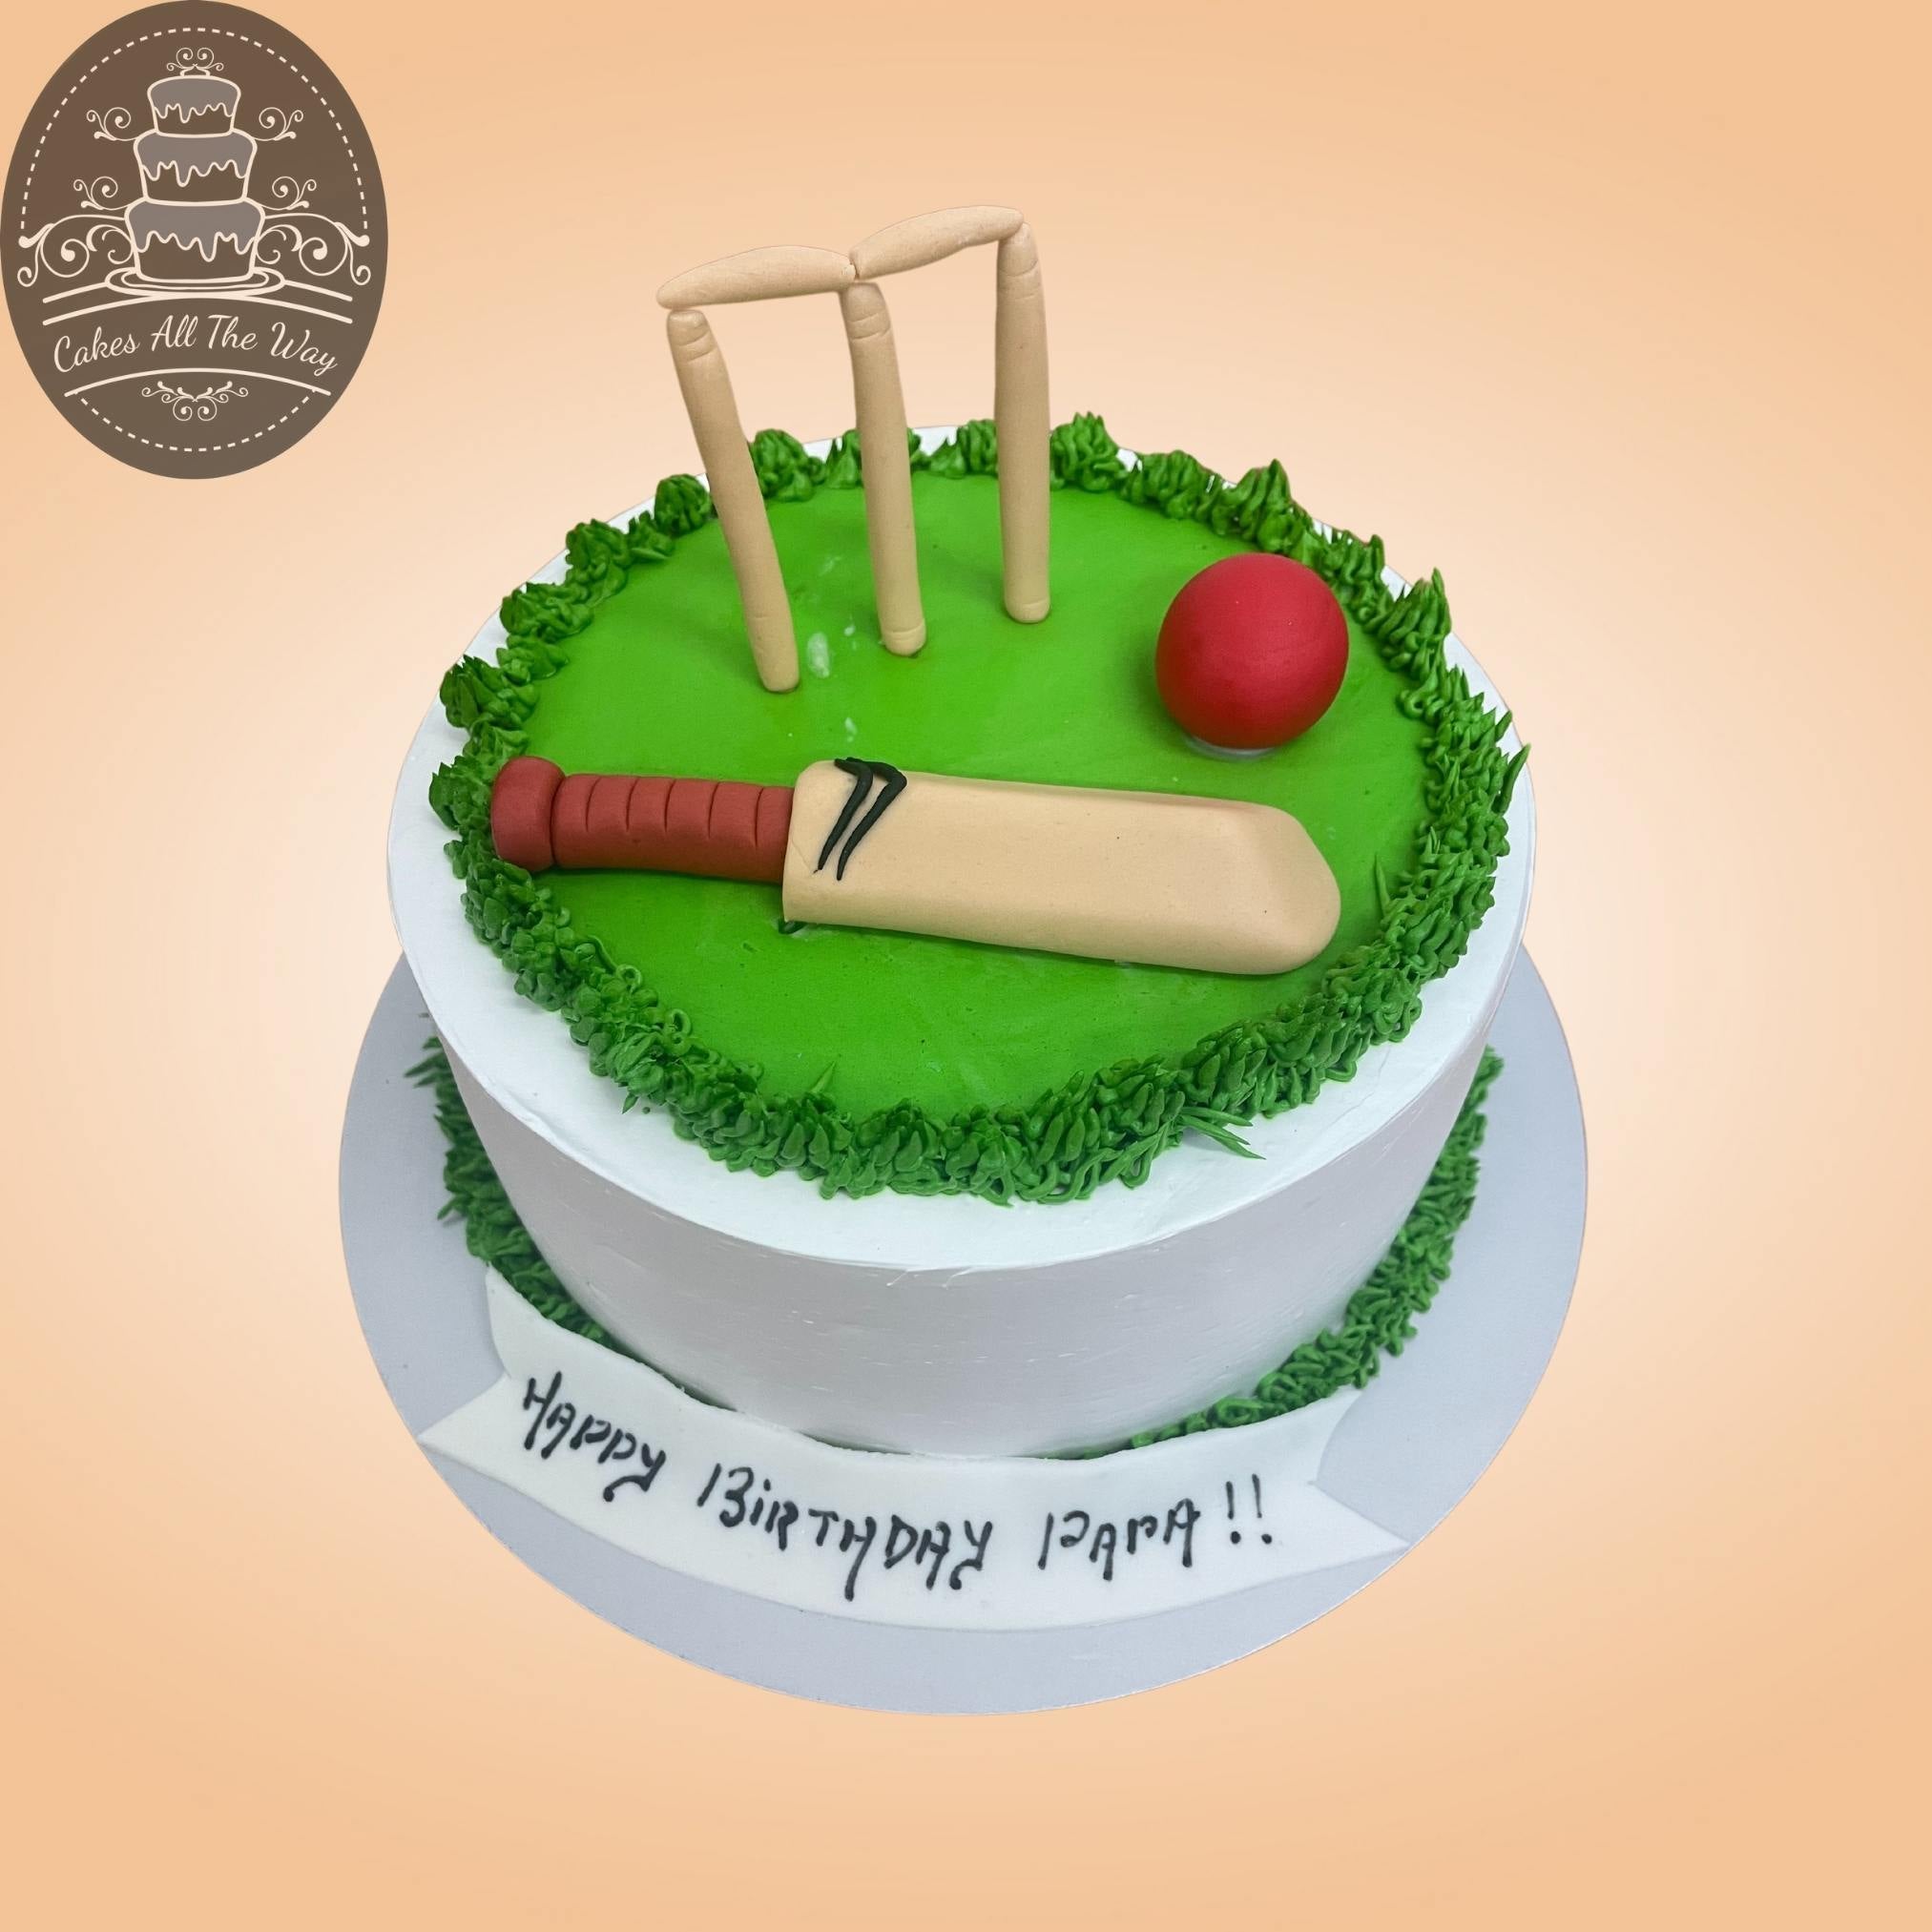 Cricket themed cake design 🏏 #cricket #cricketcake #chocolate  #chocolatetruffle #chocolatetrufflecake #bentocake #bento | Instagram